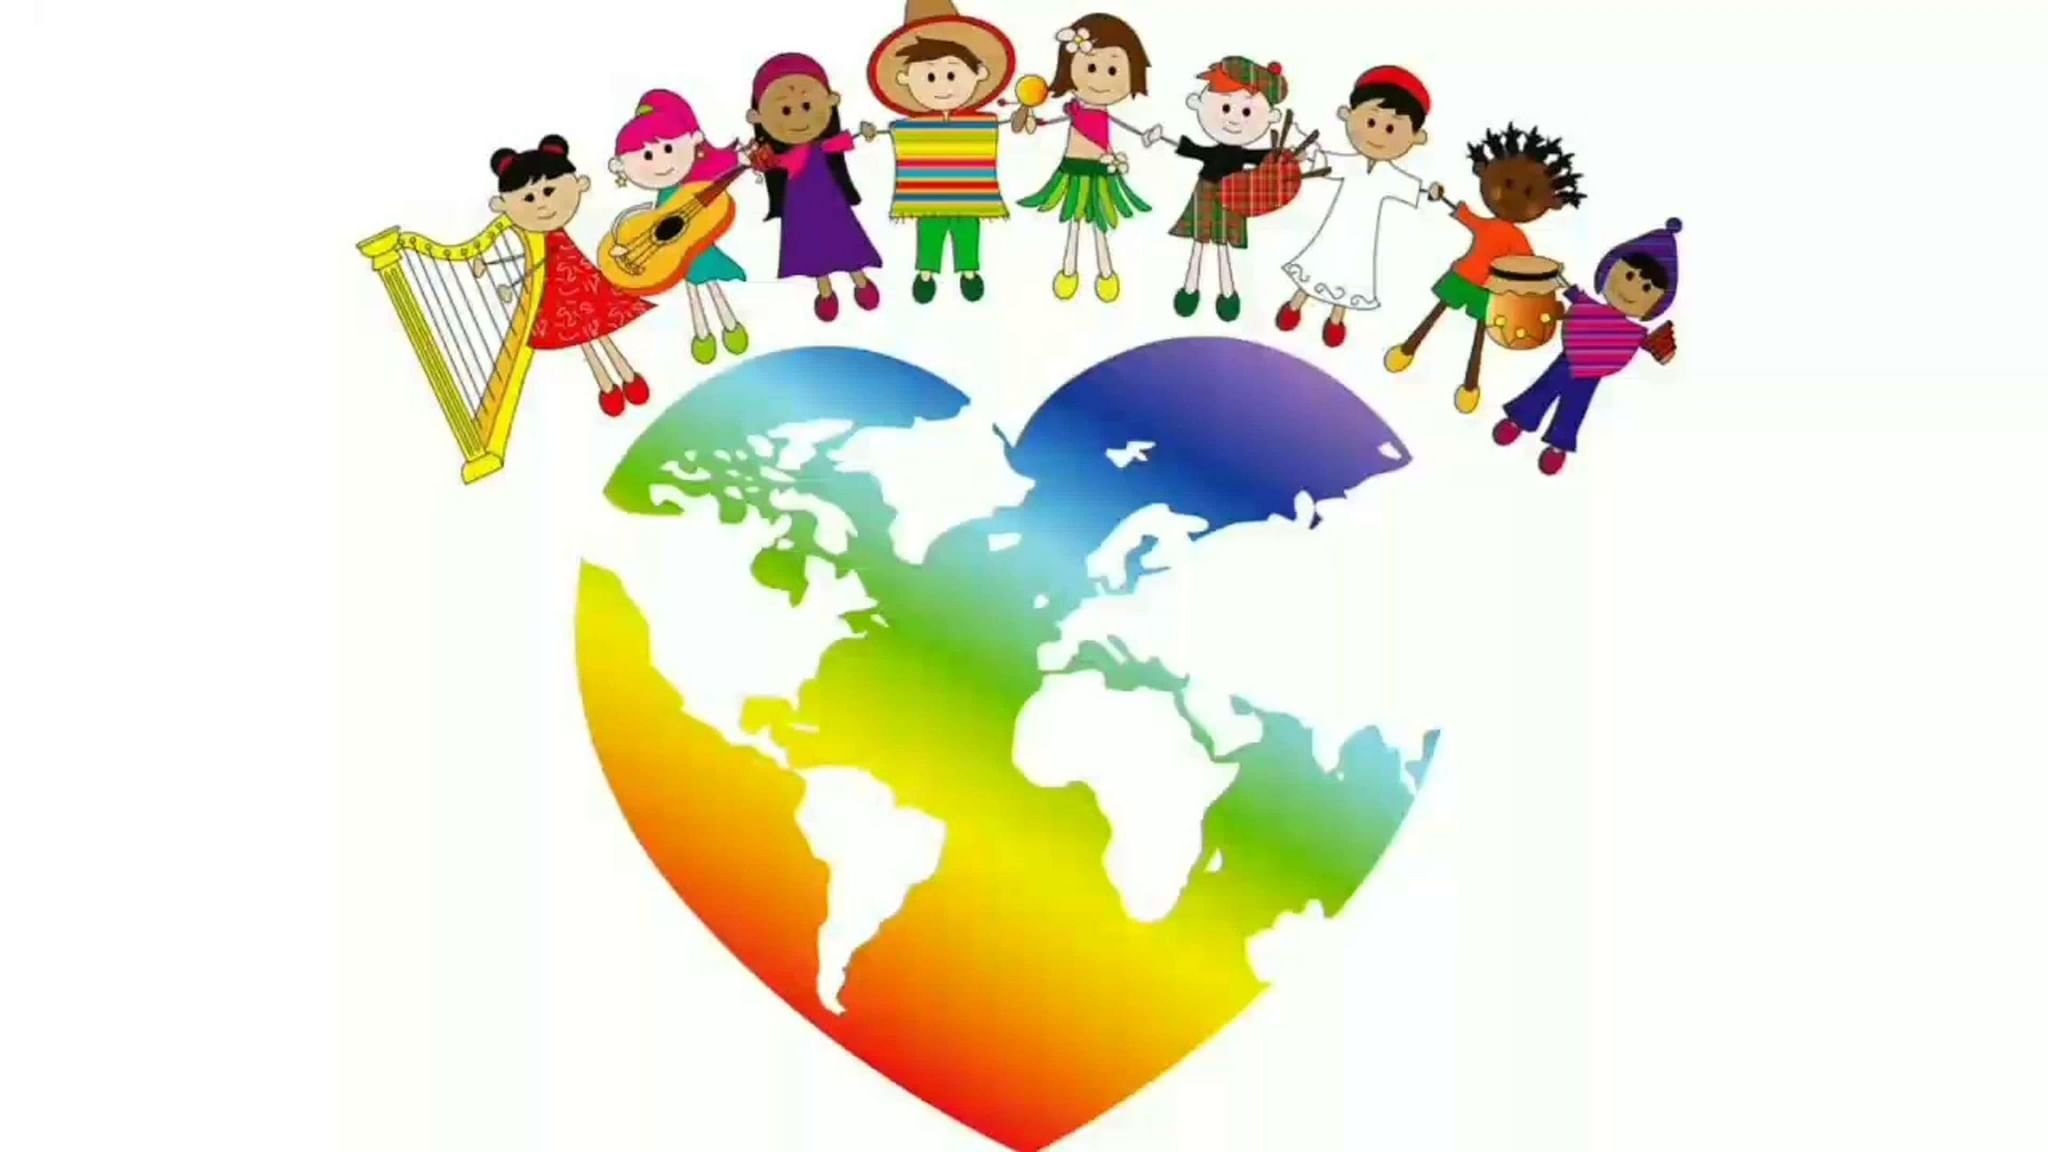 Урок в мире слов. Дружба народов толерантность. Планета толерантности. Дружат дети на планете. Эмблема ко Дню толерантности.